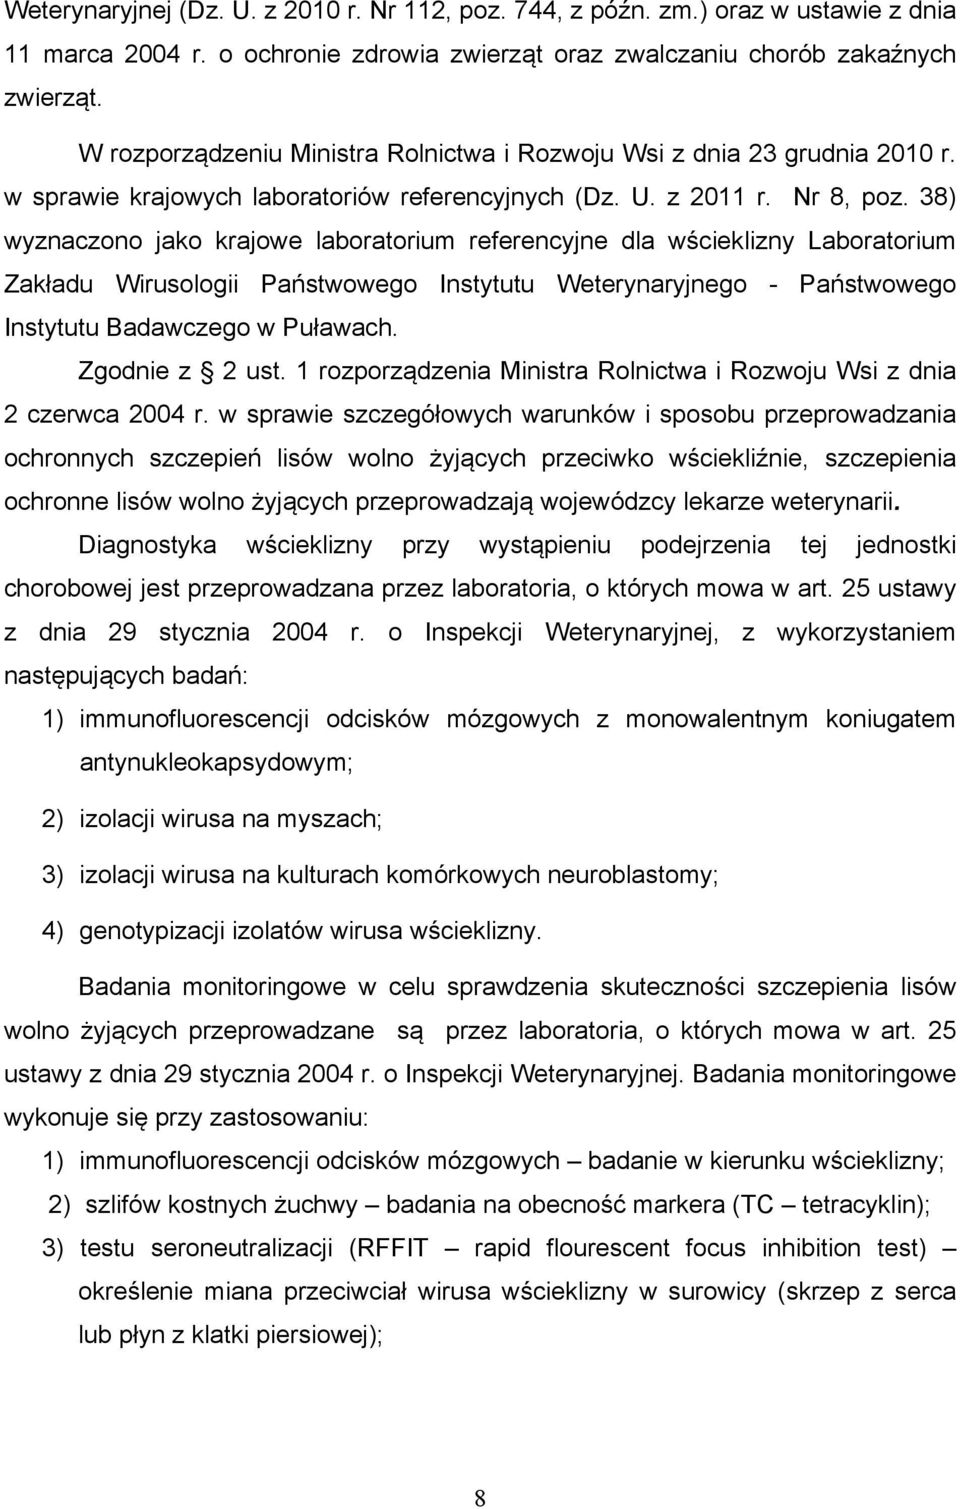 38) wyznaczono jako krajowe laboratorium referencyjne dla wścieklizny Laboratorium Zakładu Wirusologii Państwowego Instytutu Weterynaryjnego - Państwowego Instytutu Badawczego w Puławach.